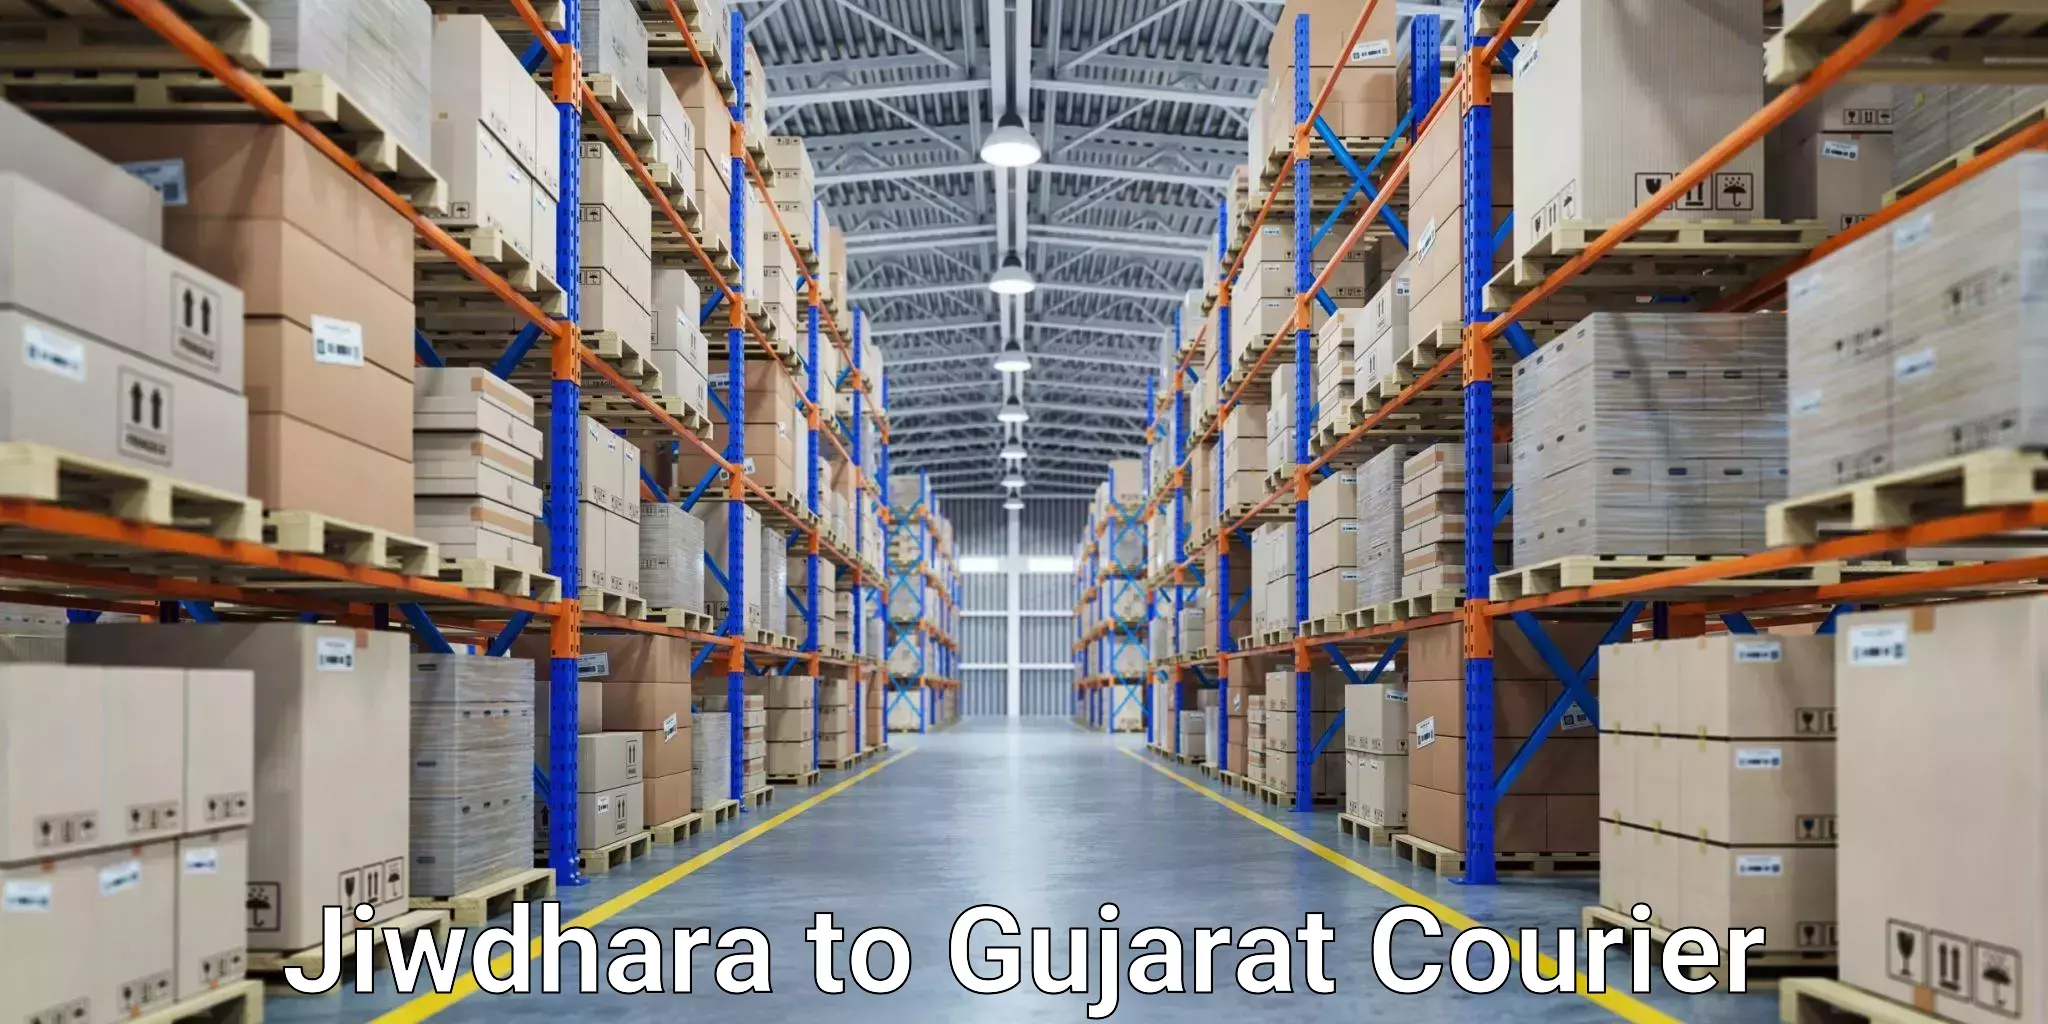 Fast-track shipping solutions Jiwdhara to Khedbrahma